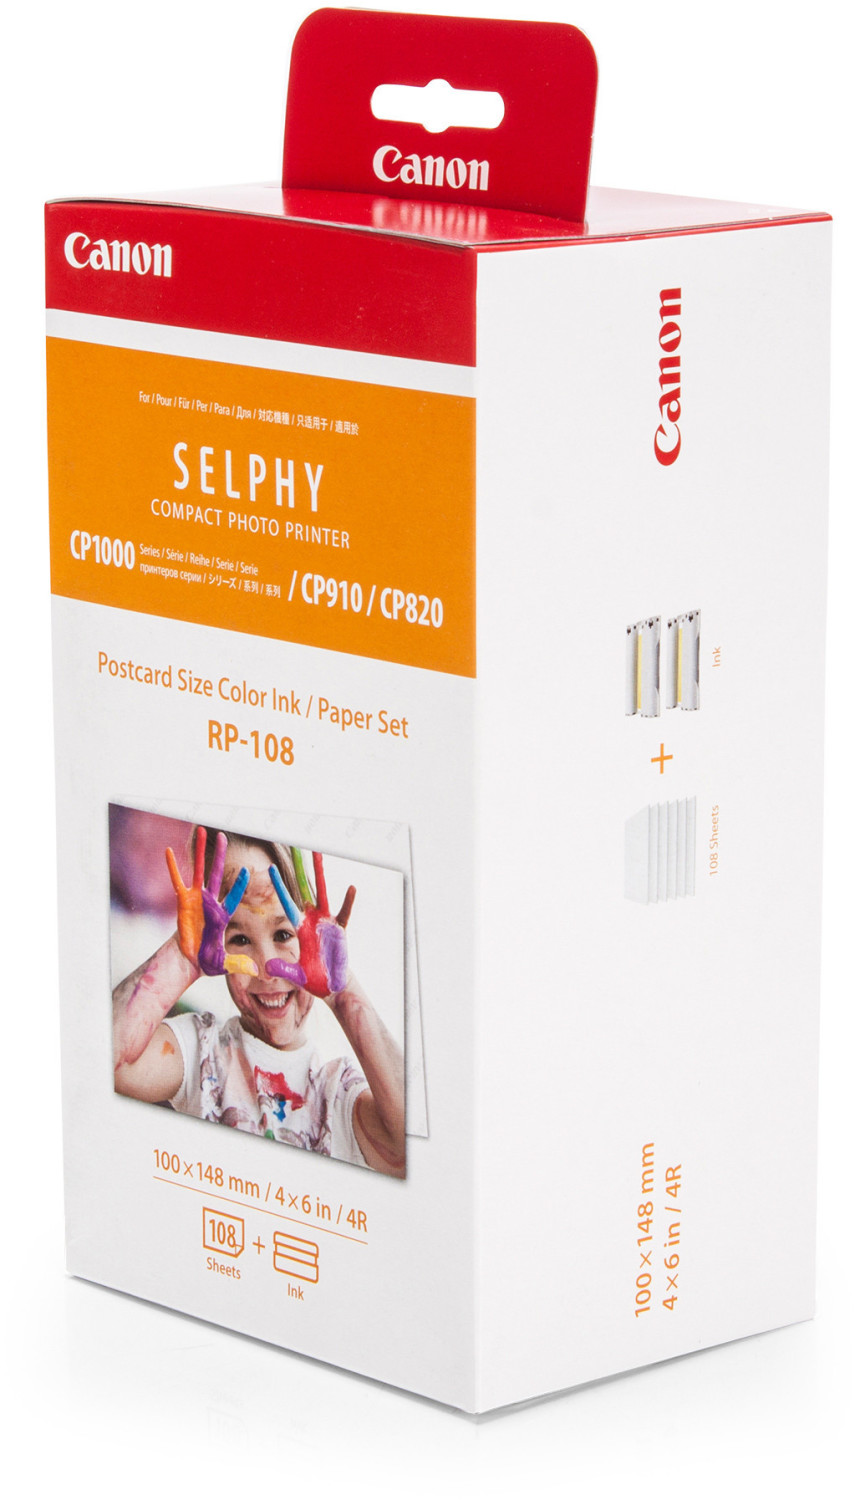 Papier selphy cp1300 - Comparez les prix et achetez sur